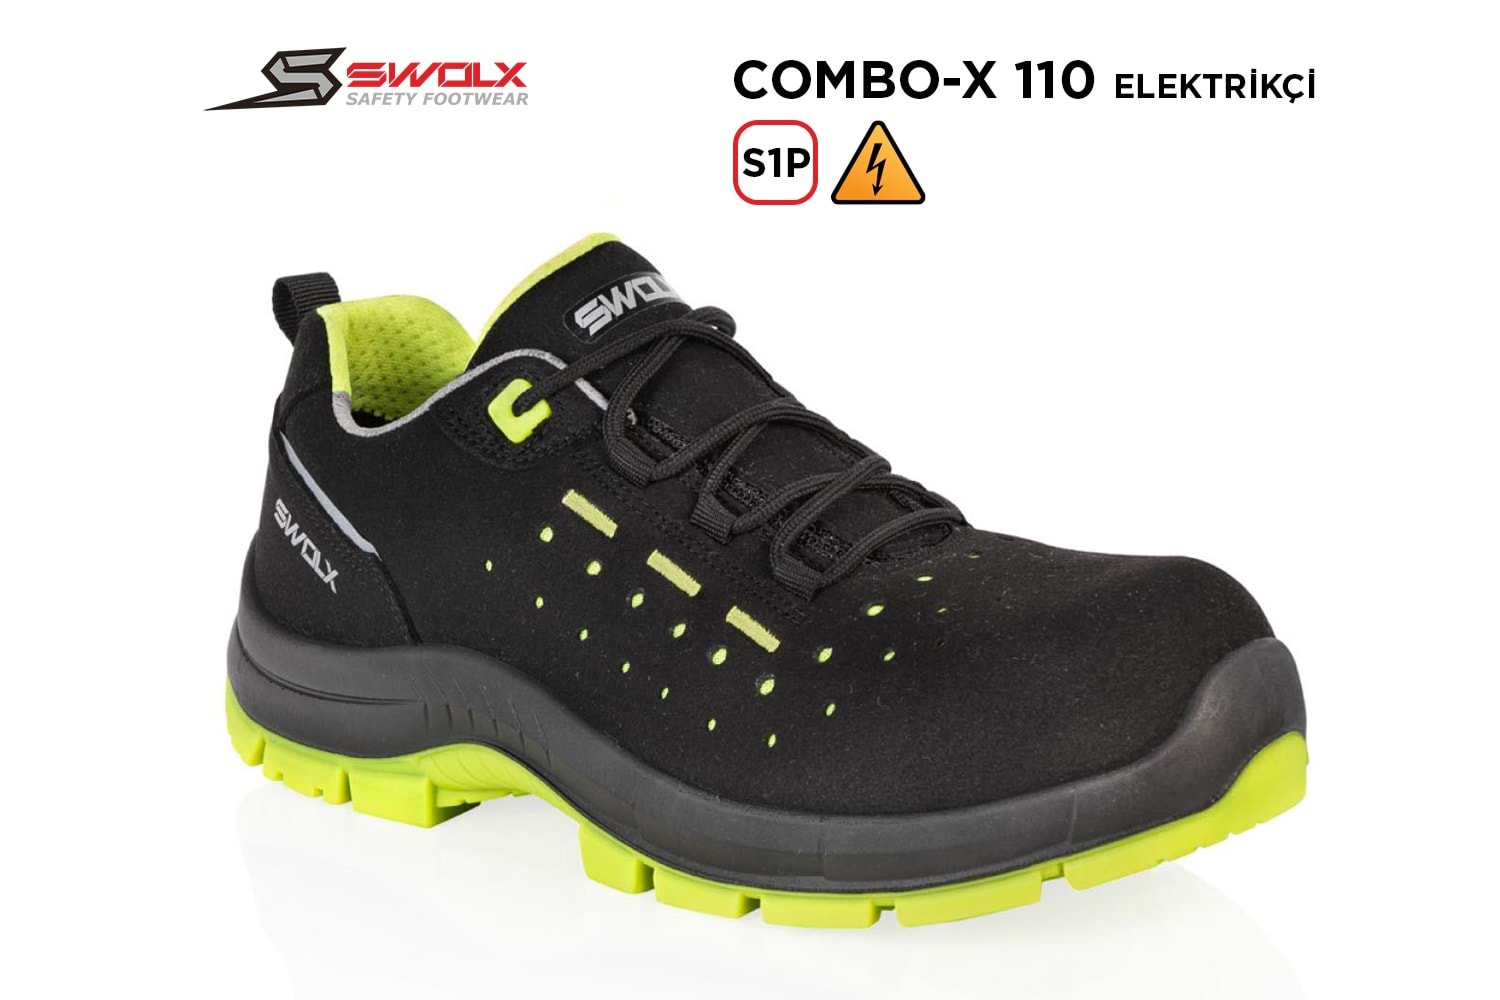 Swolx İş Ayakkabısı - Combo-X 110 S1P Elektrikçi - 38